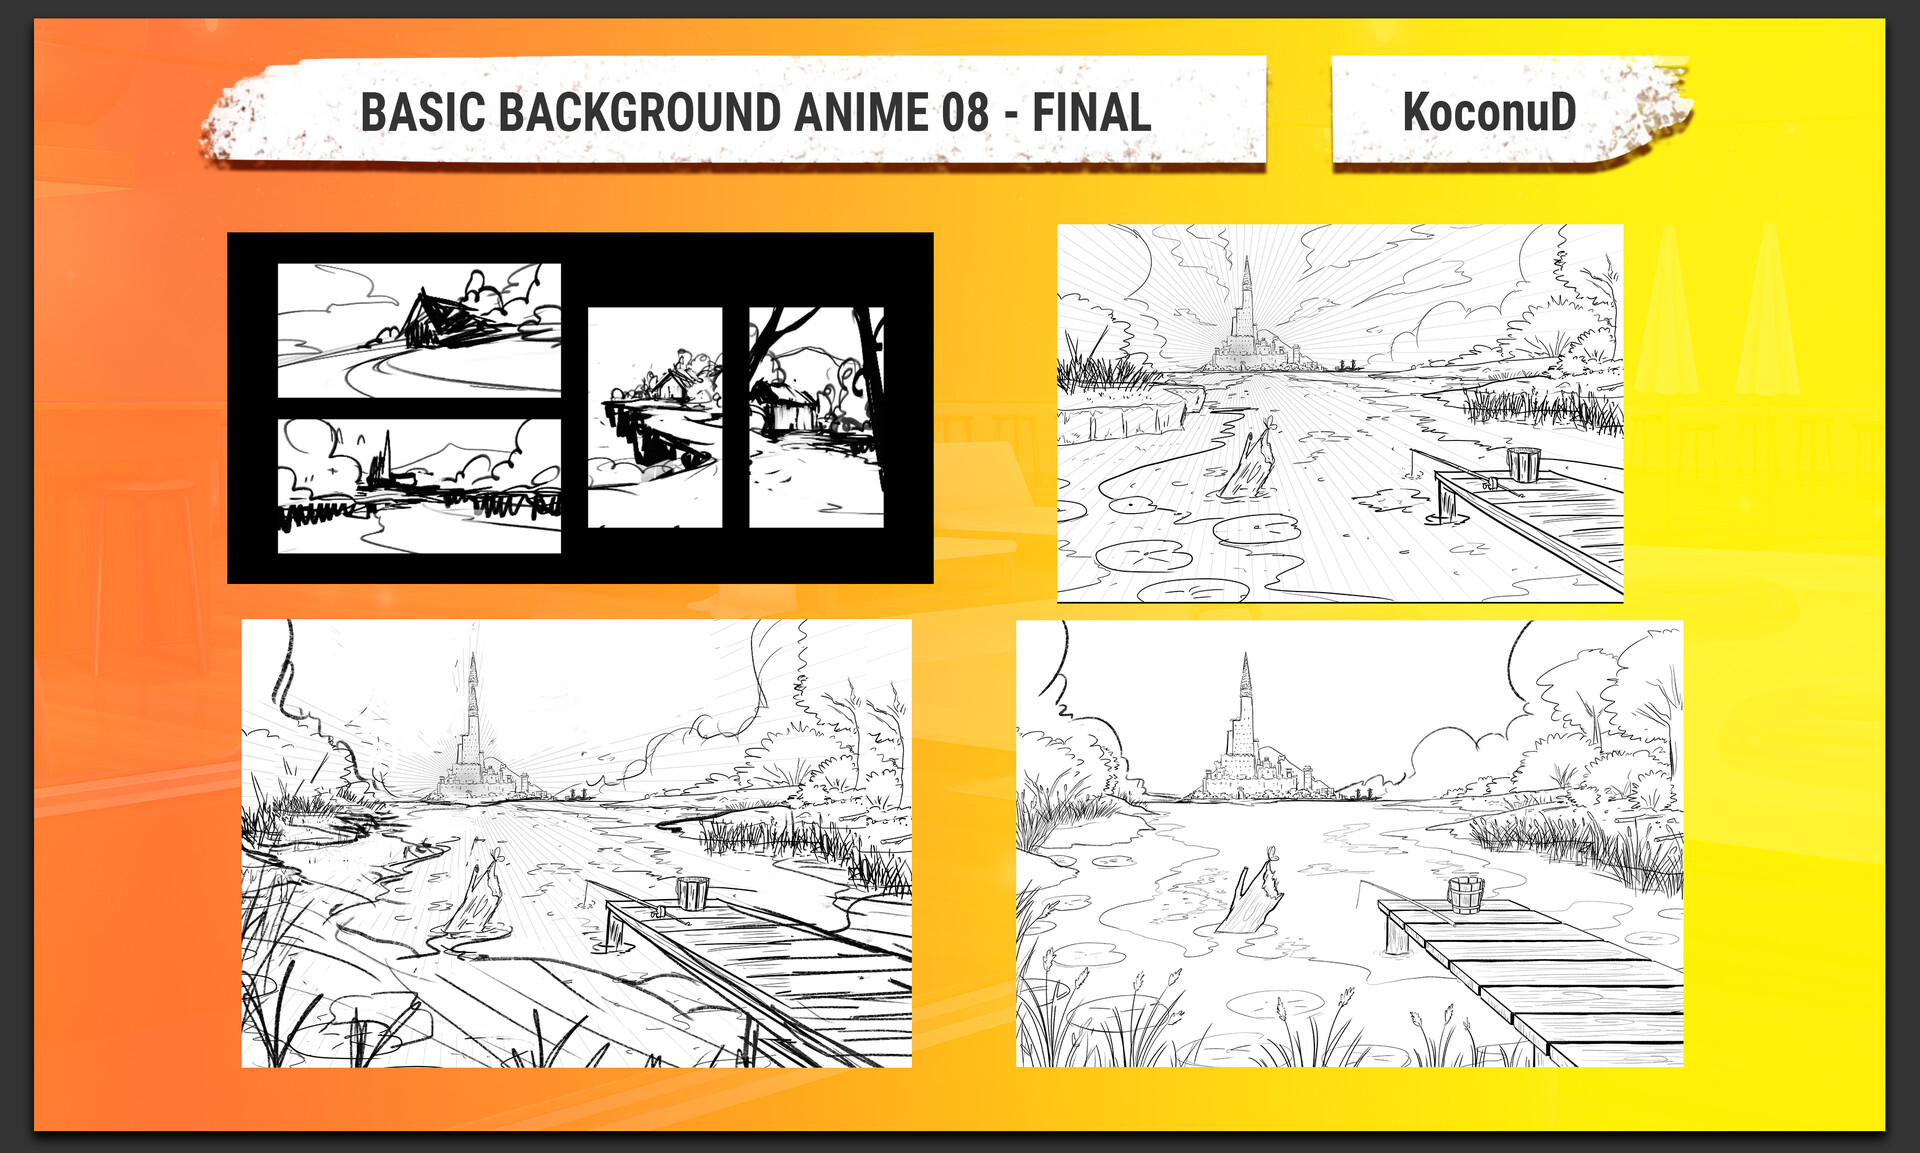 Vẽ background anime chưa bao giờ dễ dàng đến thế với các công cụ vẽ trên Photoshop. Nếu bạn muốn tìm hiểu kỹ thuật vẽ background anime chuyên nghiệp, hãy đến với chúng tôi ngay hôm nay để được hướng dẫn cụ thể.